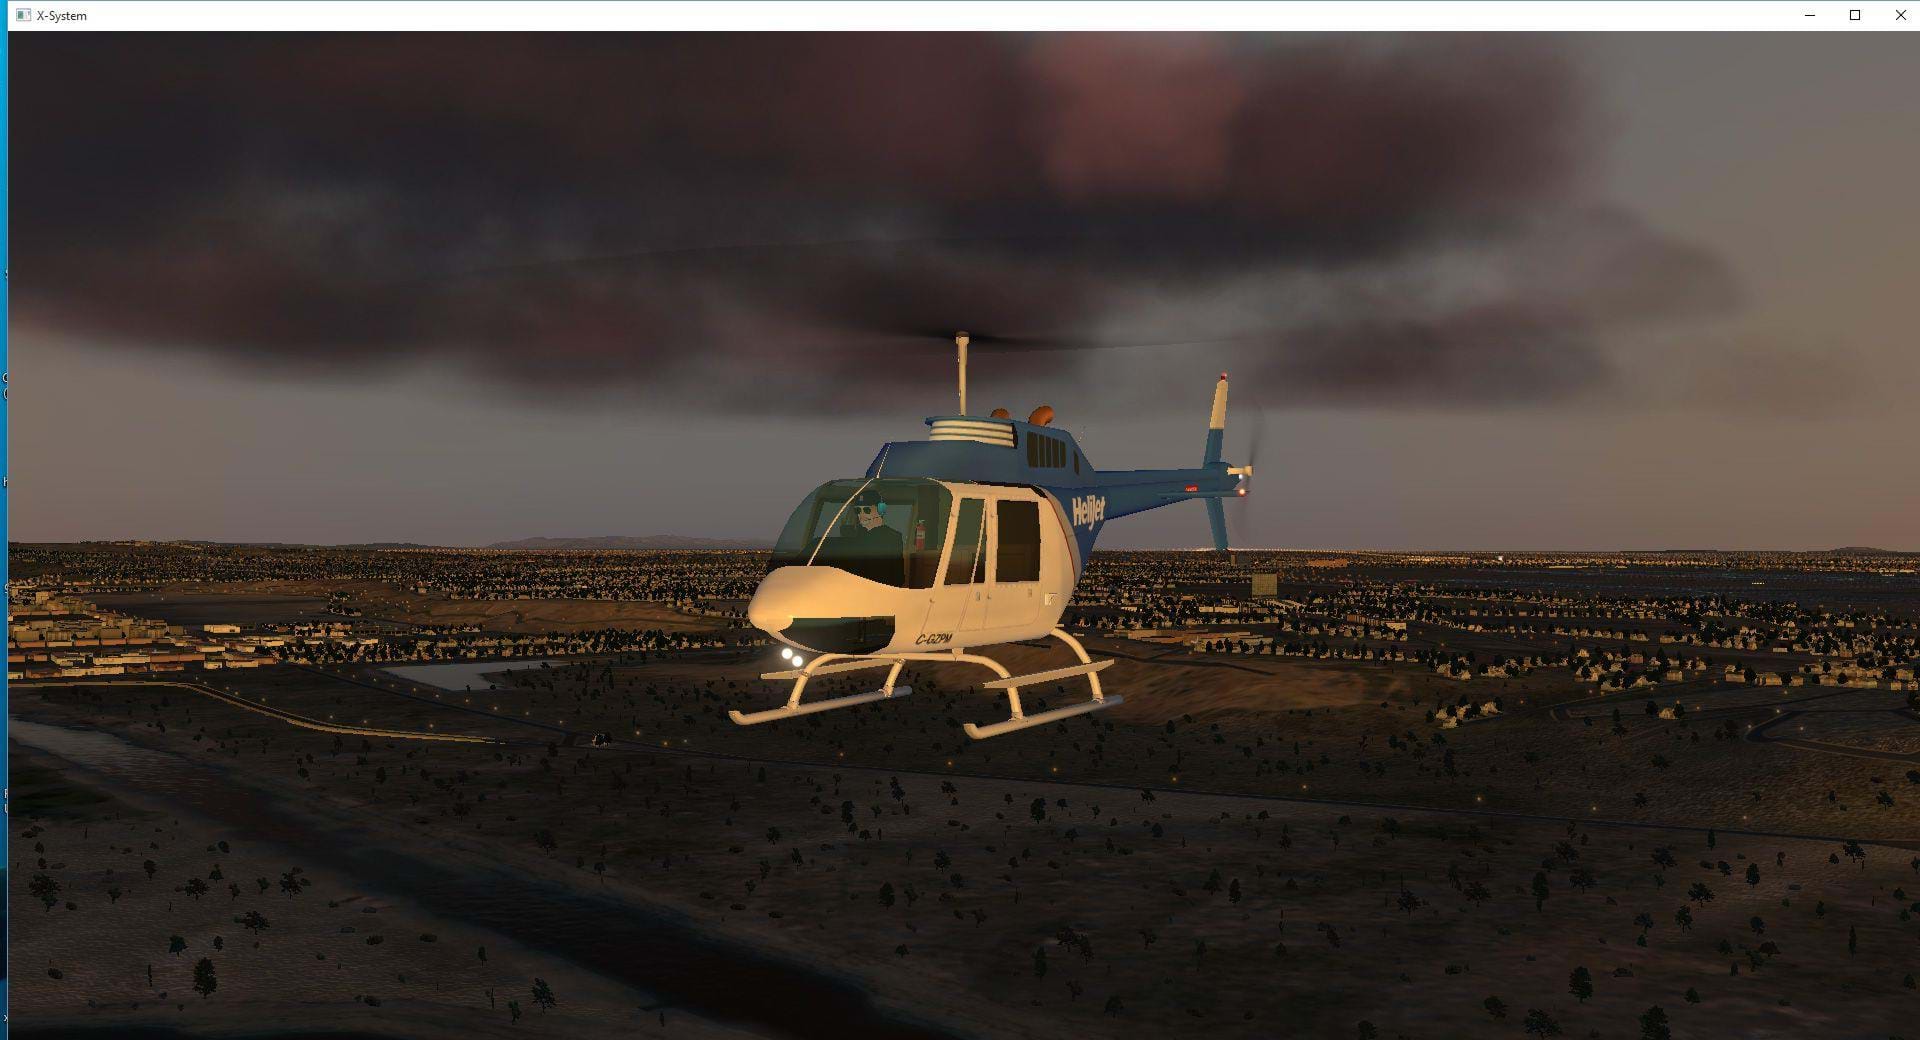 Bell 206 in flight in X-Plane